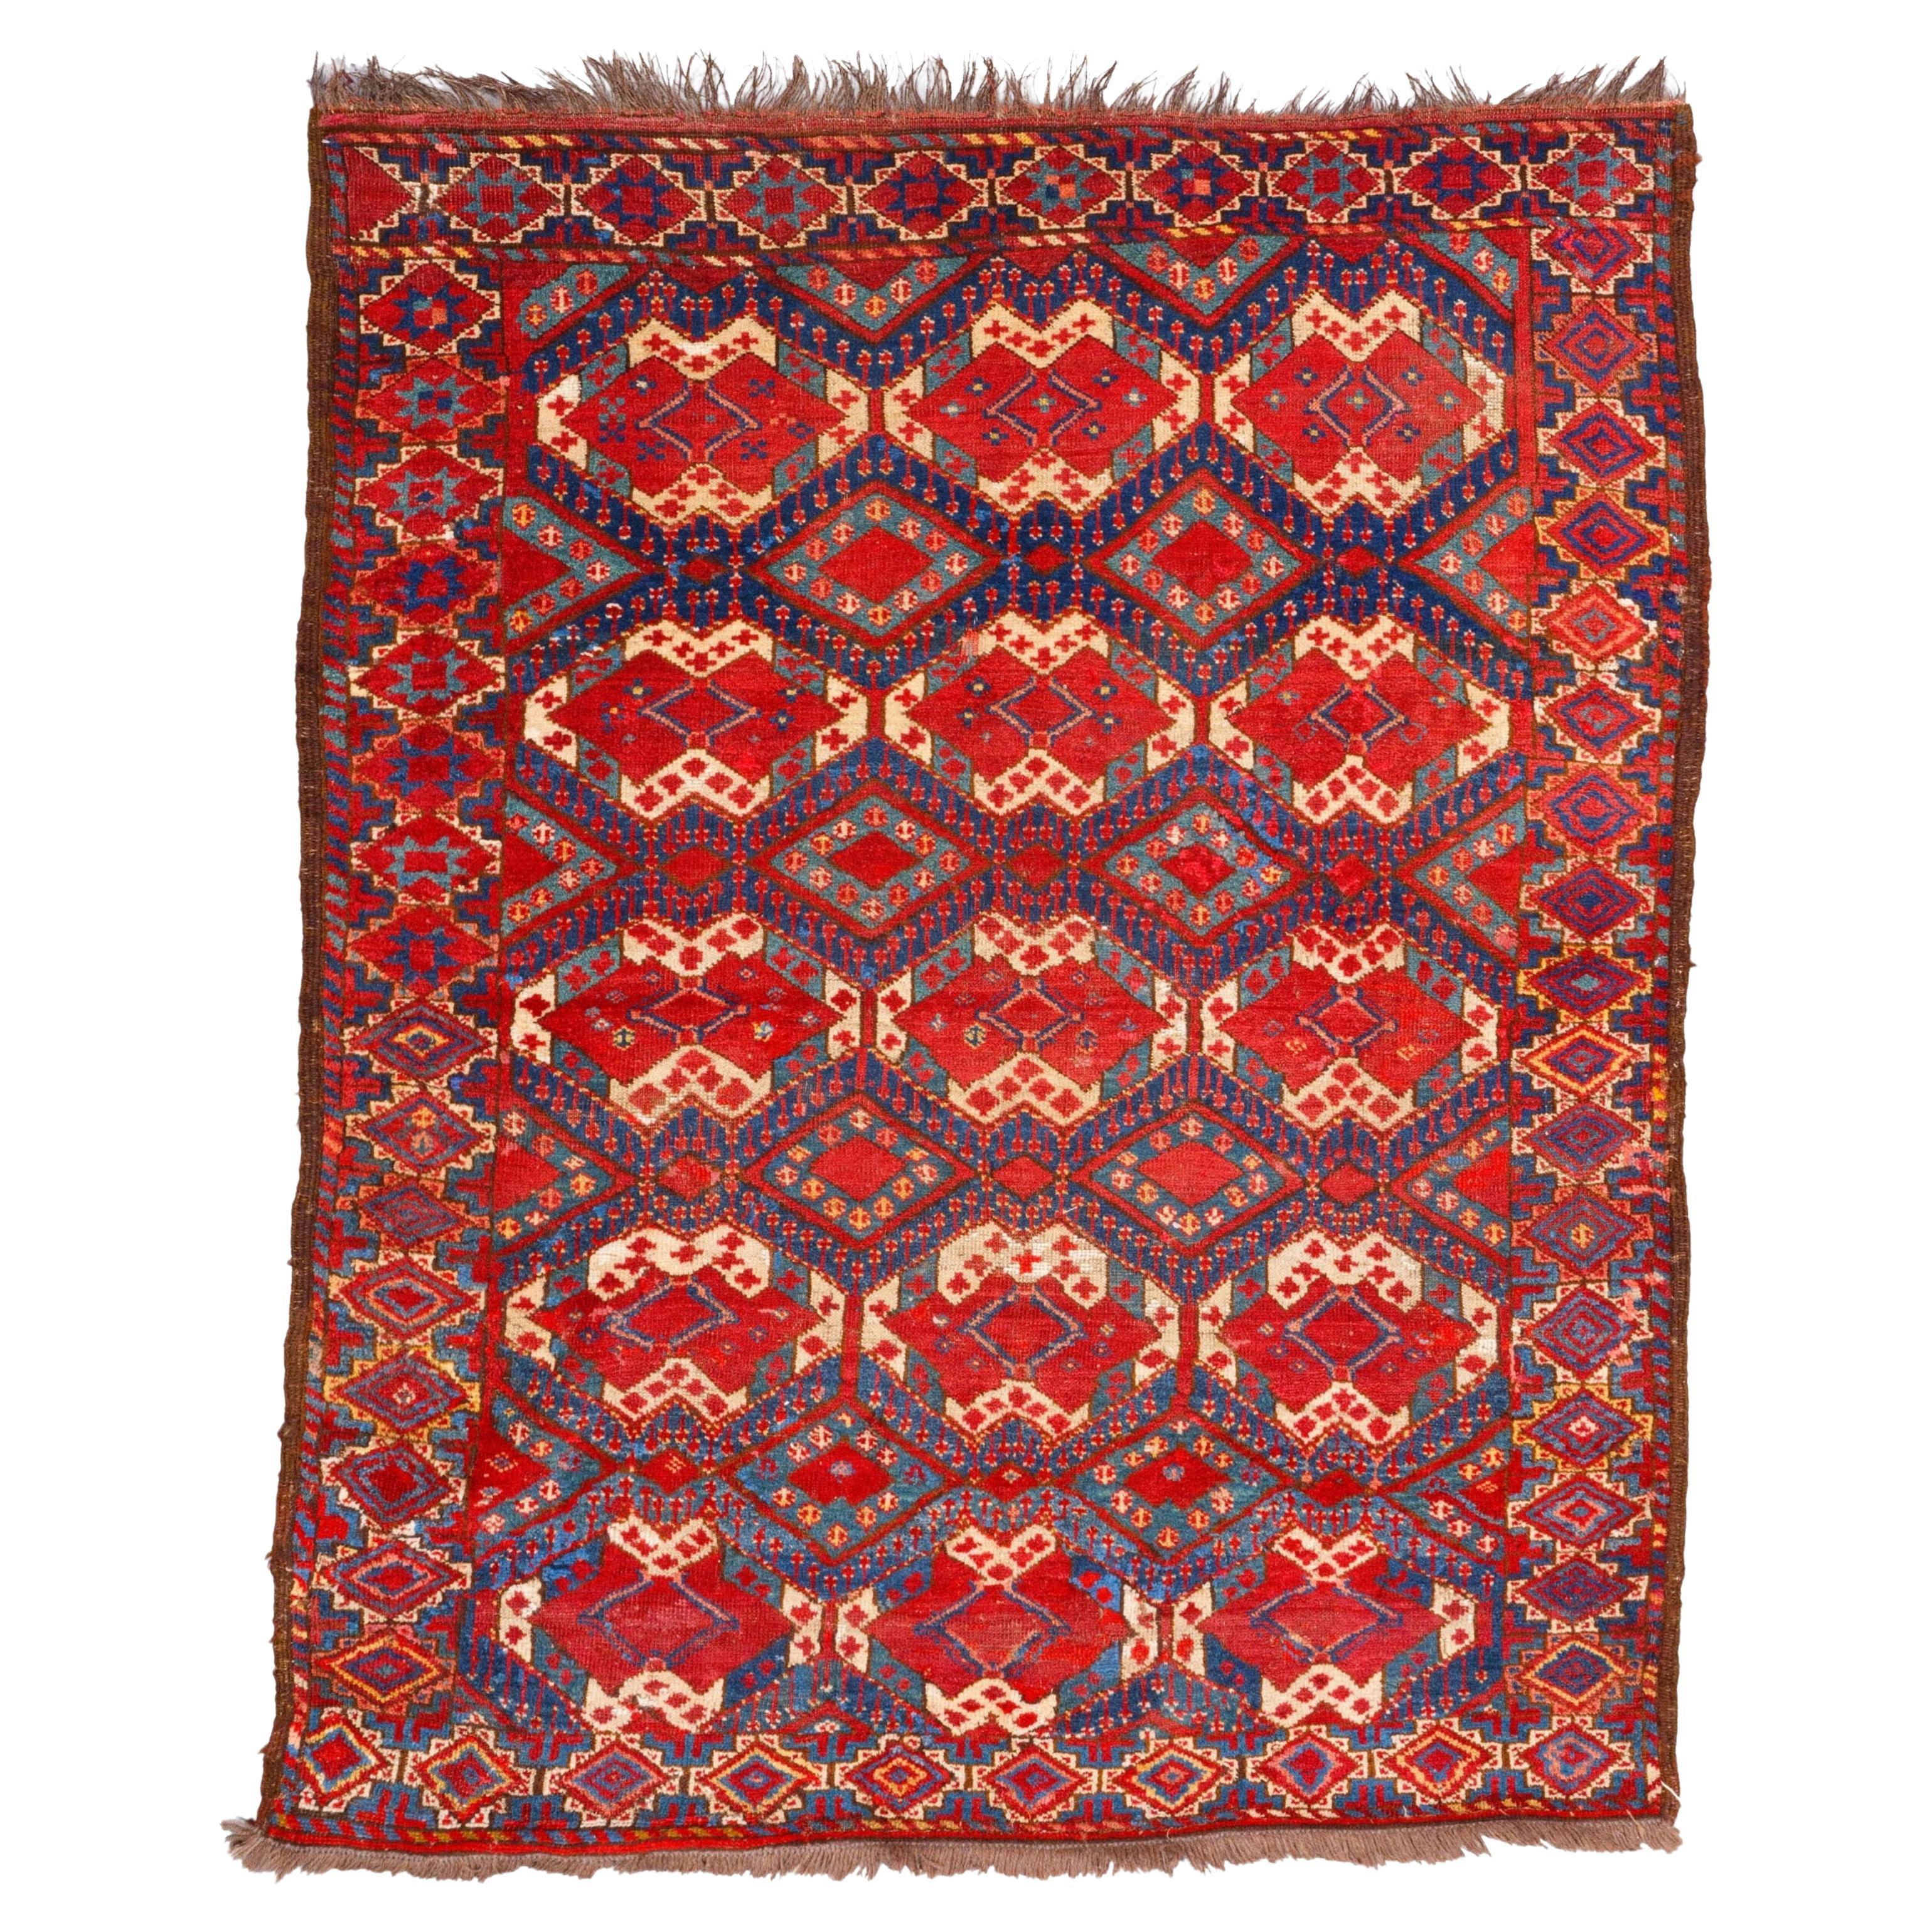 Antique Beshir Carpet - 19th Century Antique Beshir Engsi, Antique Rug